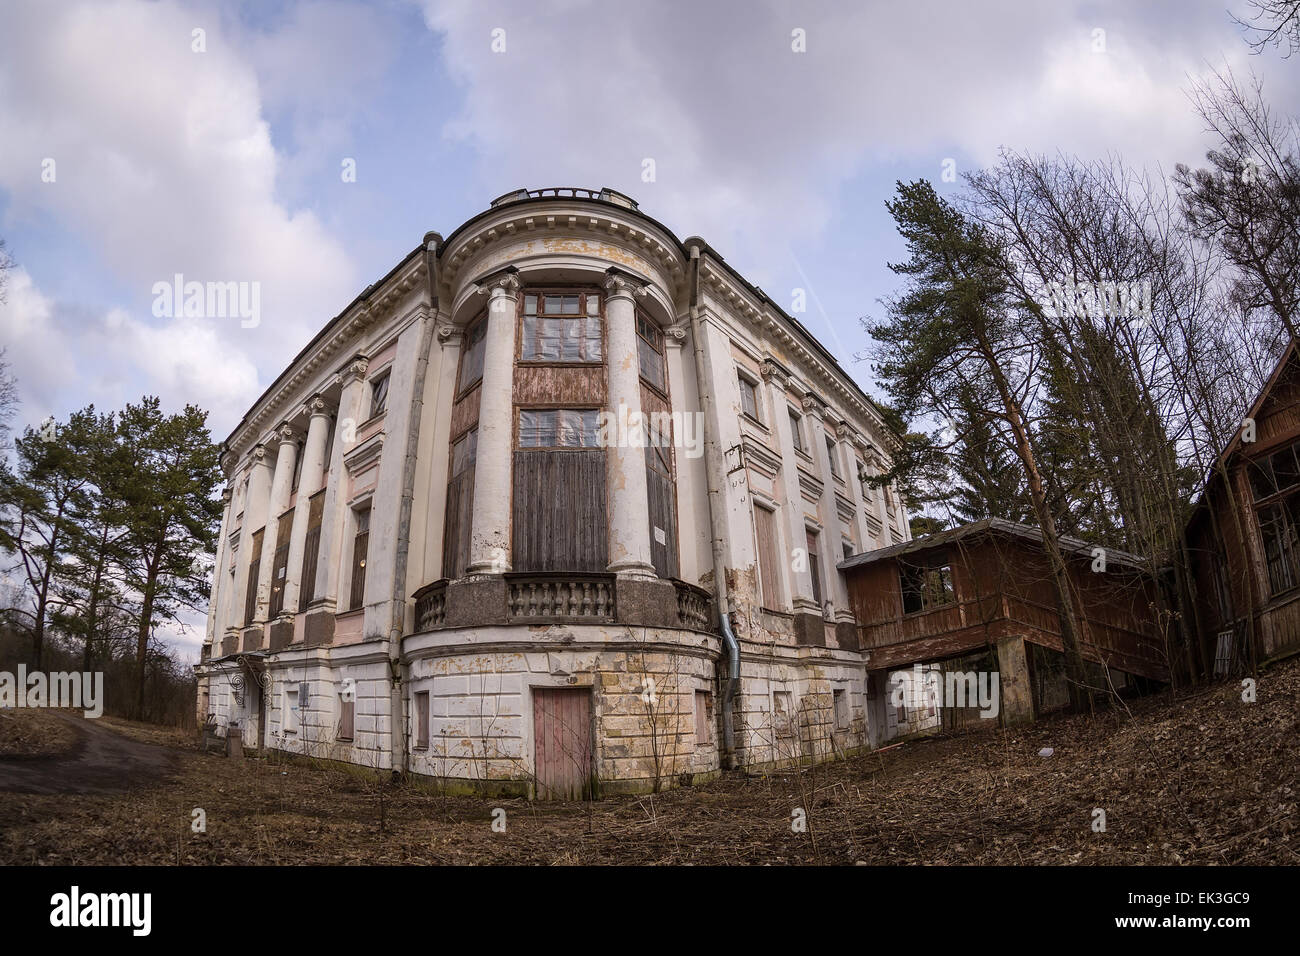 The Demidovs Manor in Taitsy, Leningrad region, Russia Stock Photo